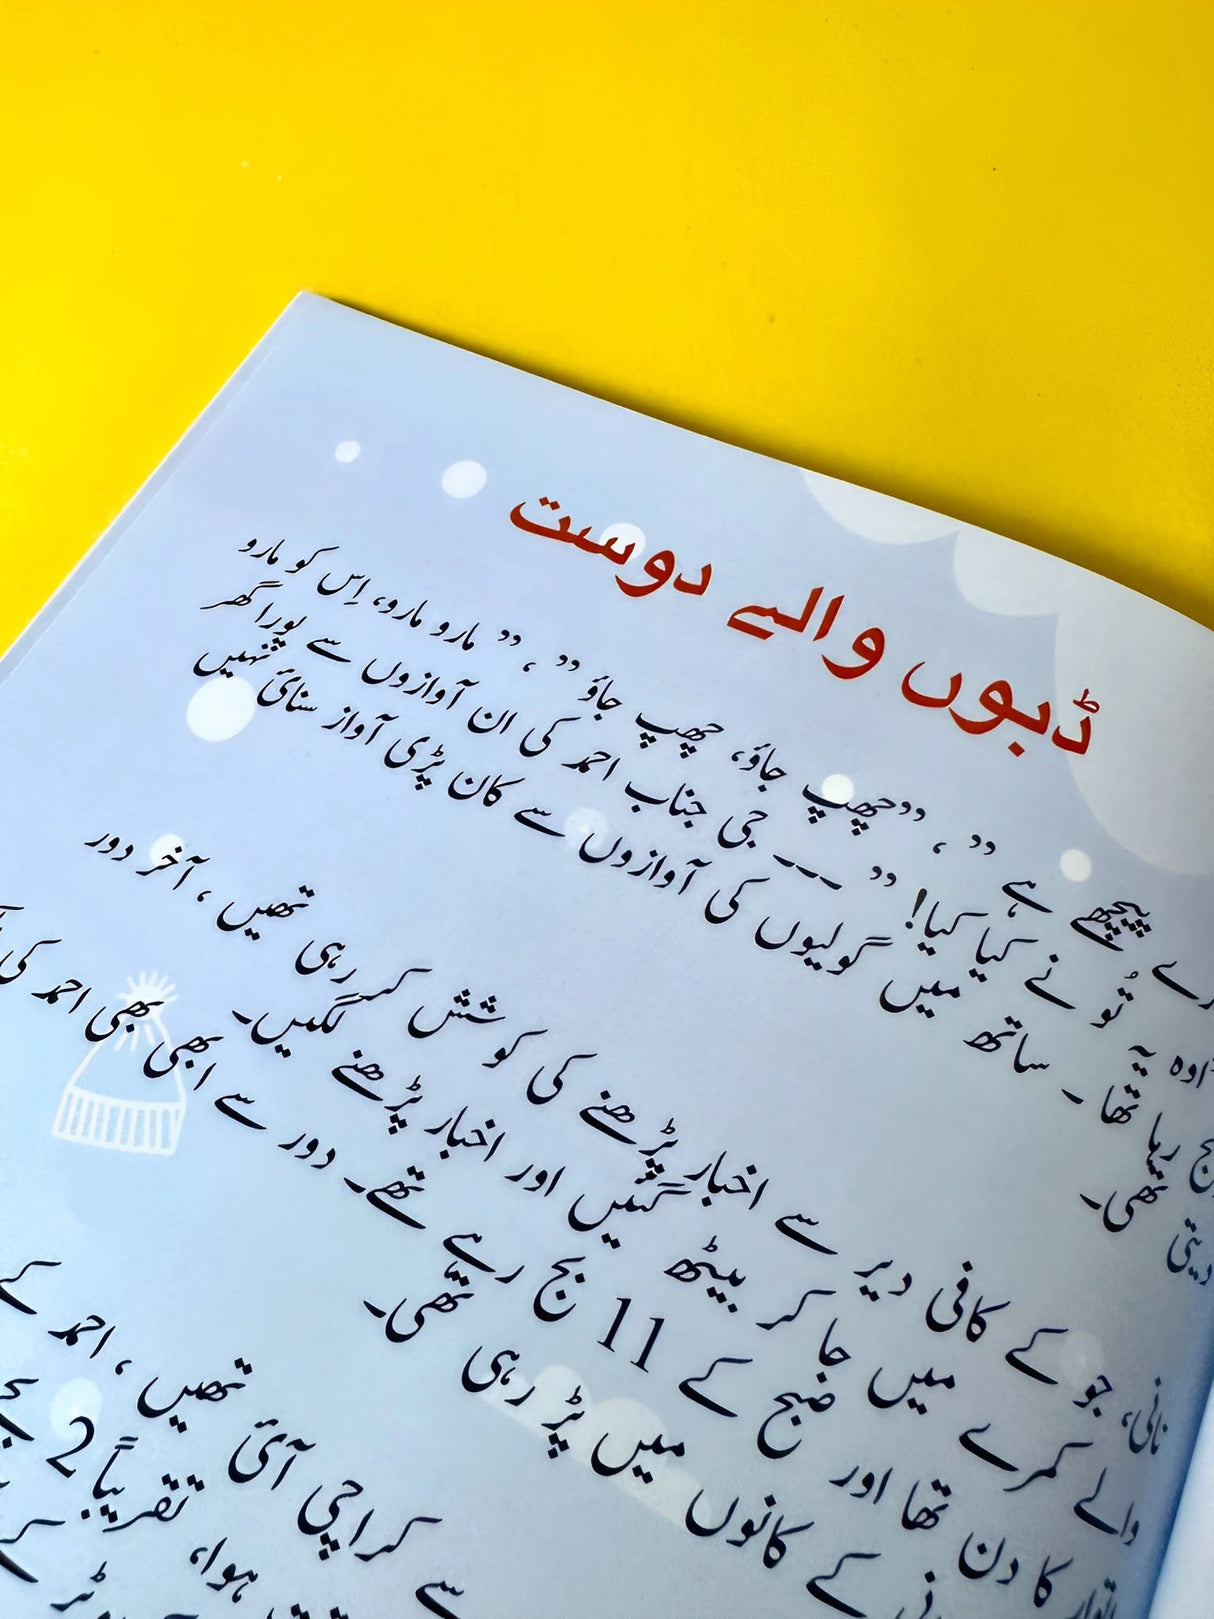 Nani Ki Kahaniyan Book